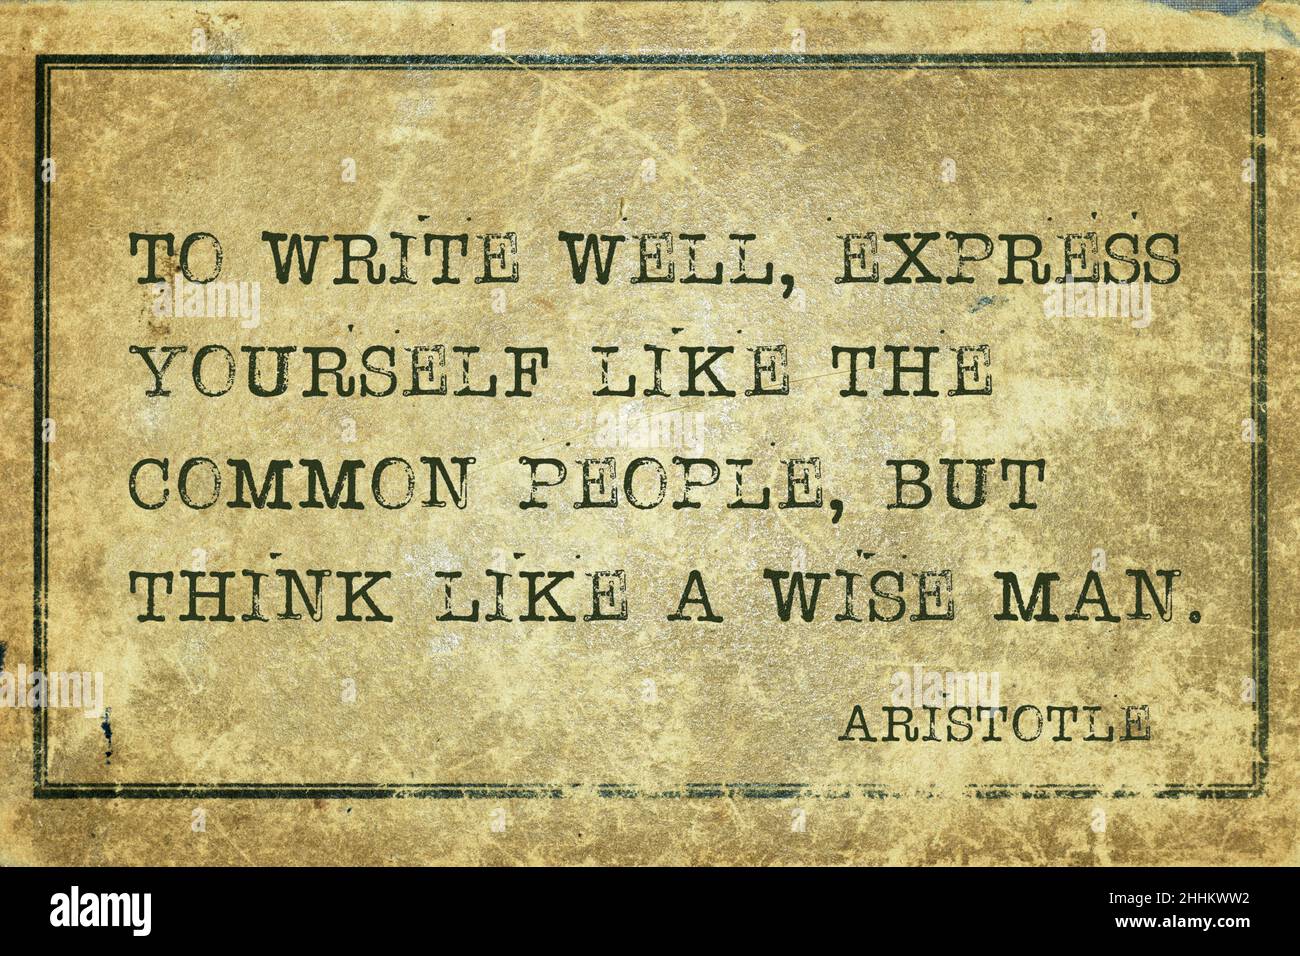 Um gut zu schreiben, drücken Sie sich wie das gewöhnliche Volk aus, aber denken Sie wie ein weiser Mann - altgriechischer Philosoph Aristoteles Zitat gedruckt auf grunge vintag Stockfoto